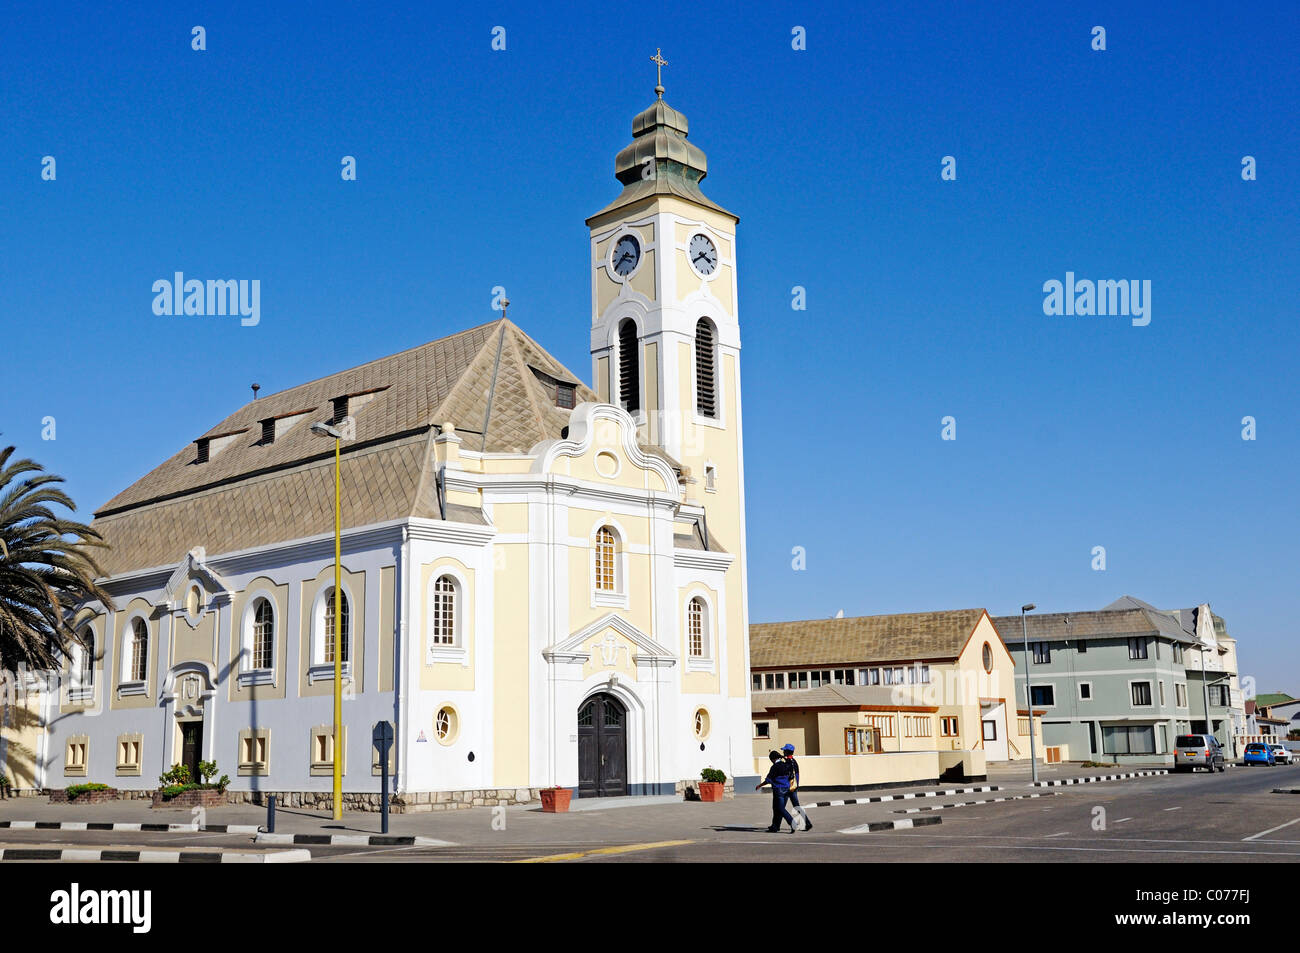 Evangelische Kirche im bayrischen Stil, Architektur aus der deutschen Kolonialzeit, Swakopmund, Erongo Region, Namibia, Afrika Stockfoto